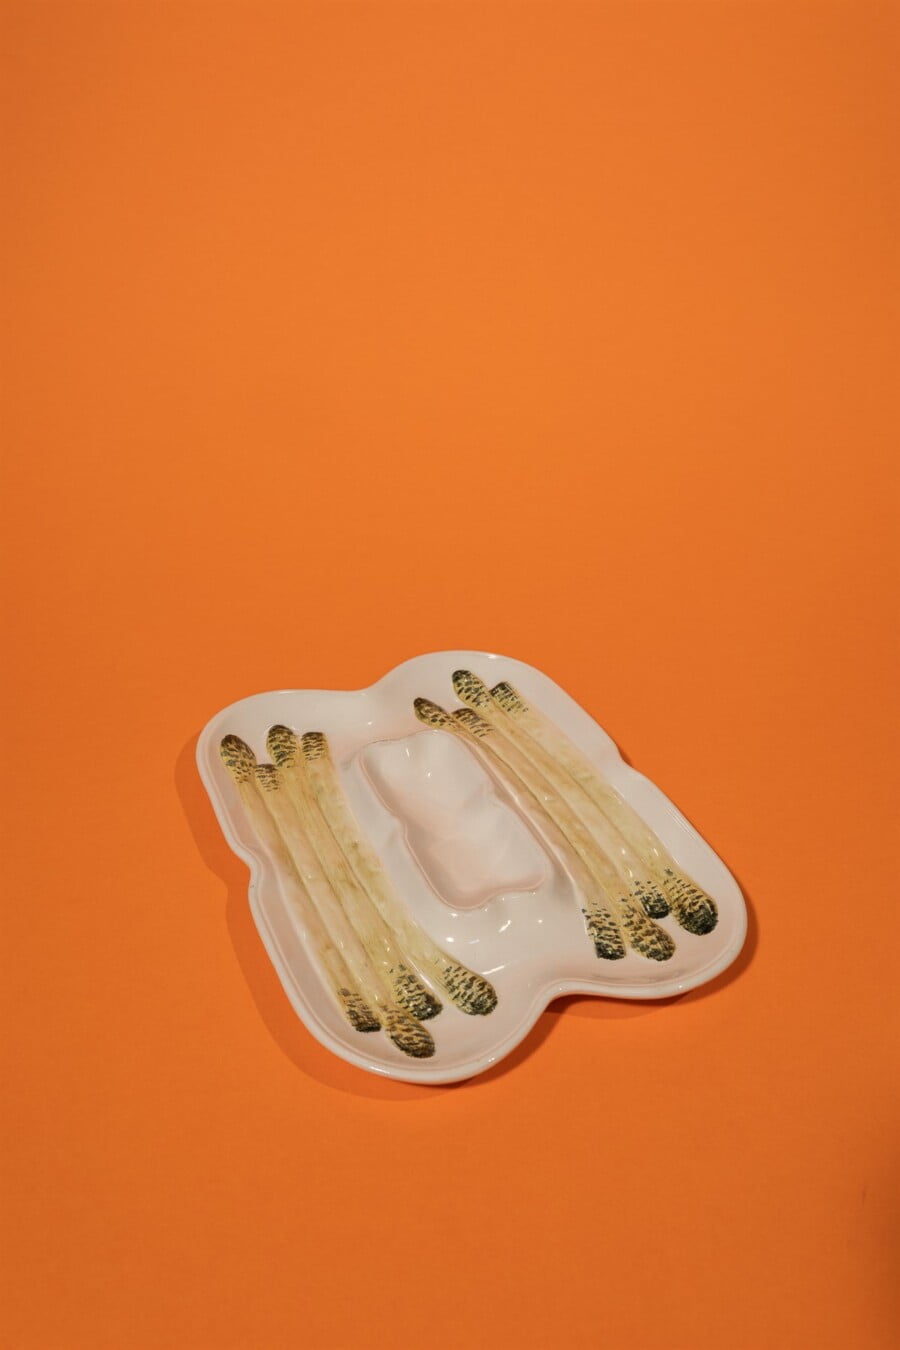 Italian asparagus porcelain plater